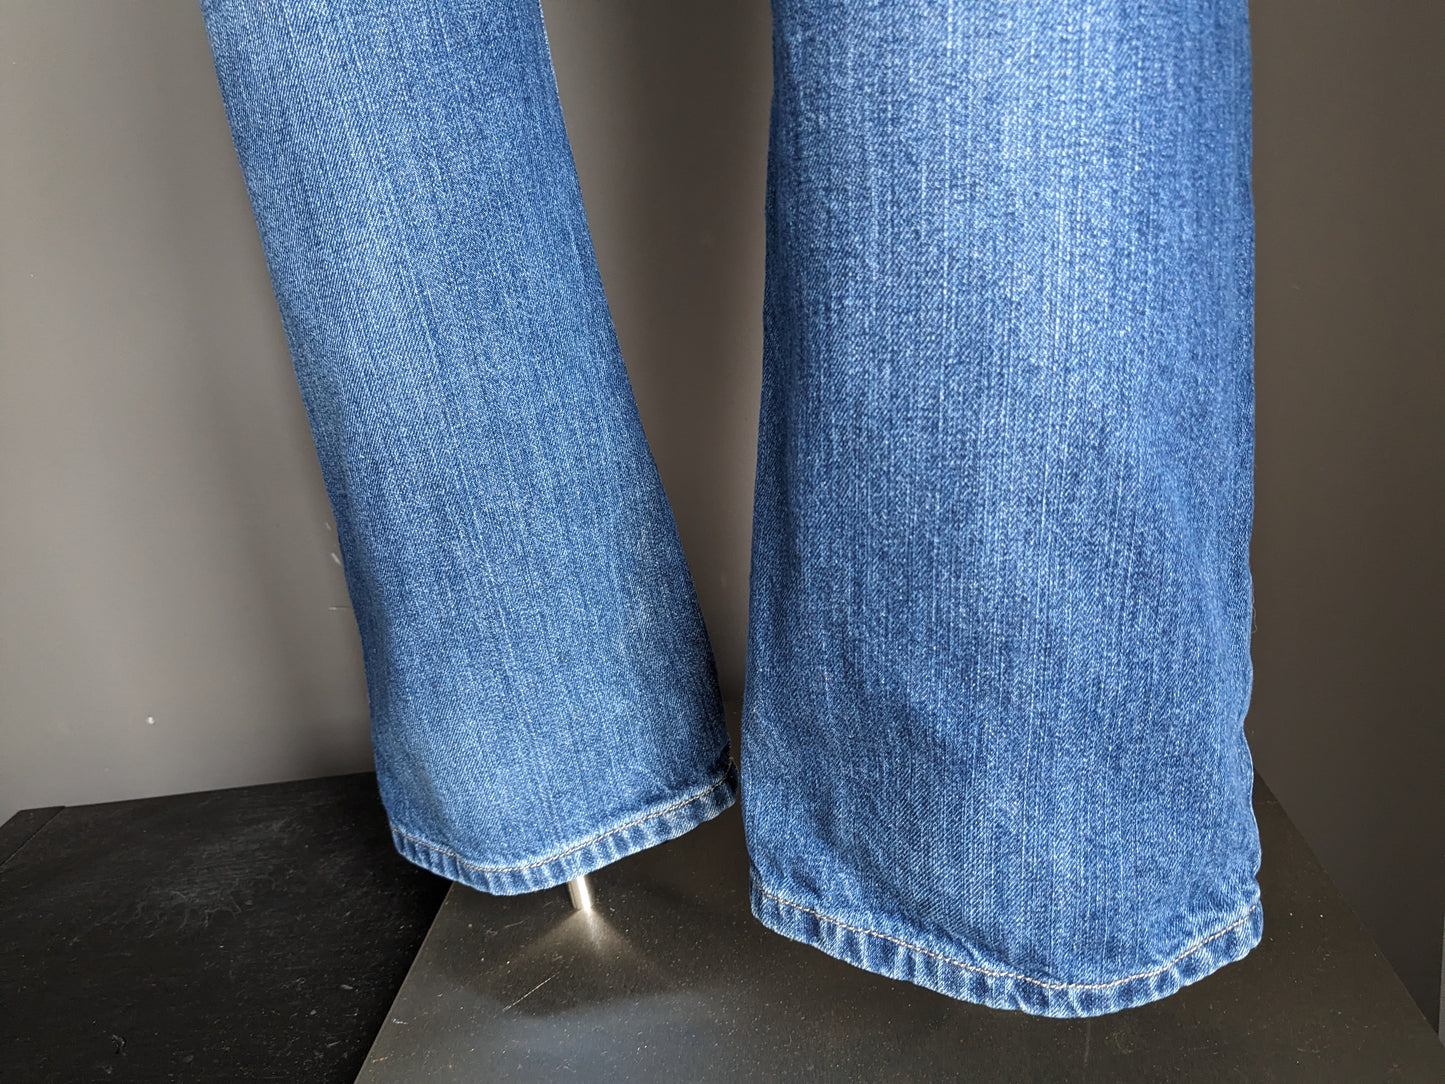 Big Star Jeans. Couleur bleue. Tapez Rogar. Ajustement régulier. Taille W36 - L32.